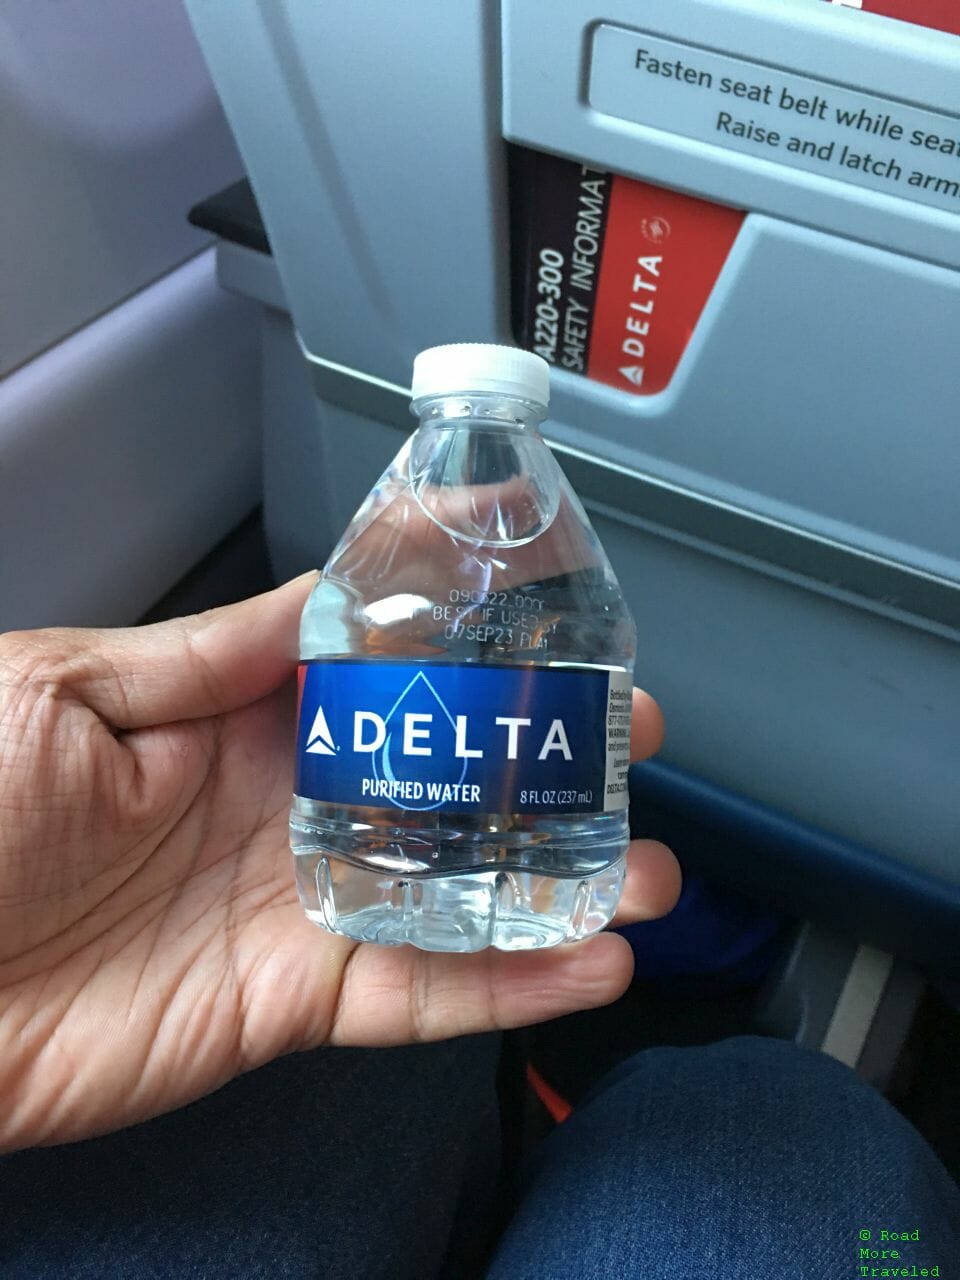 Delta A220-300 First Class - water bottle